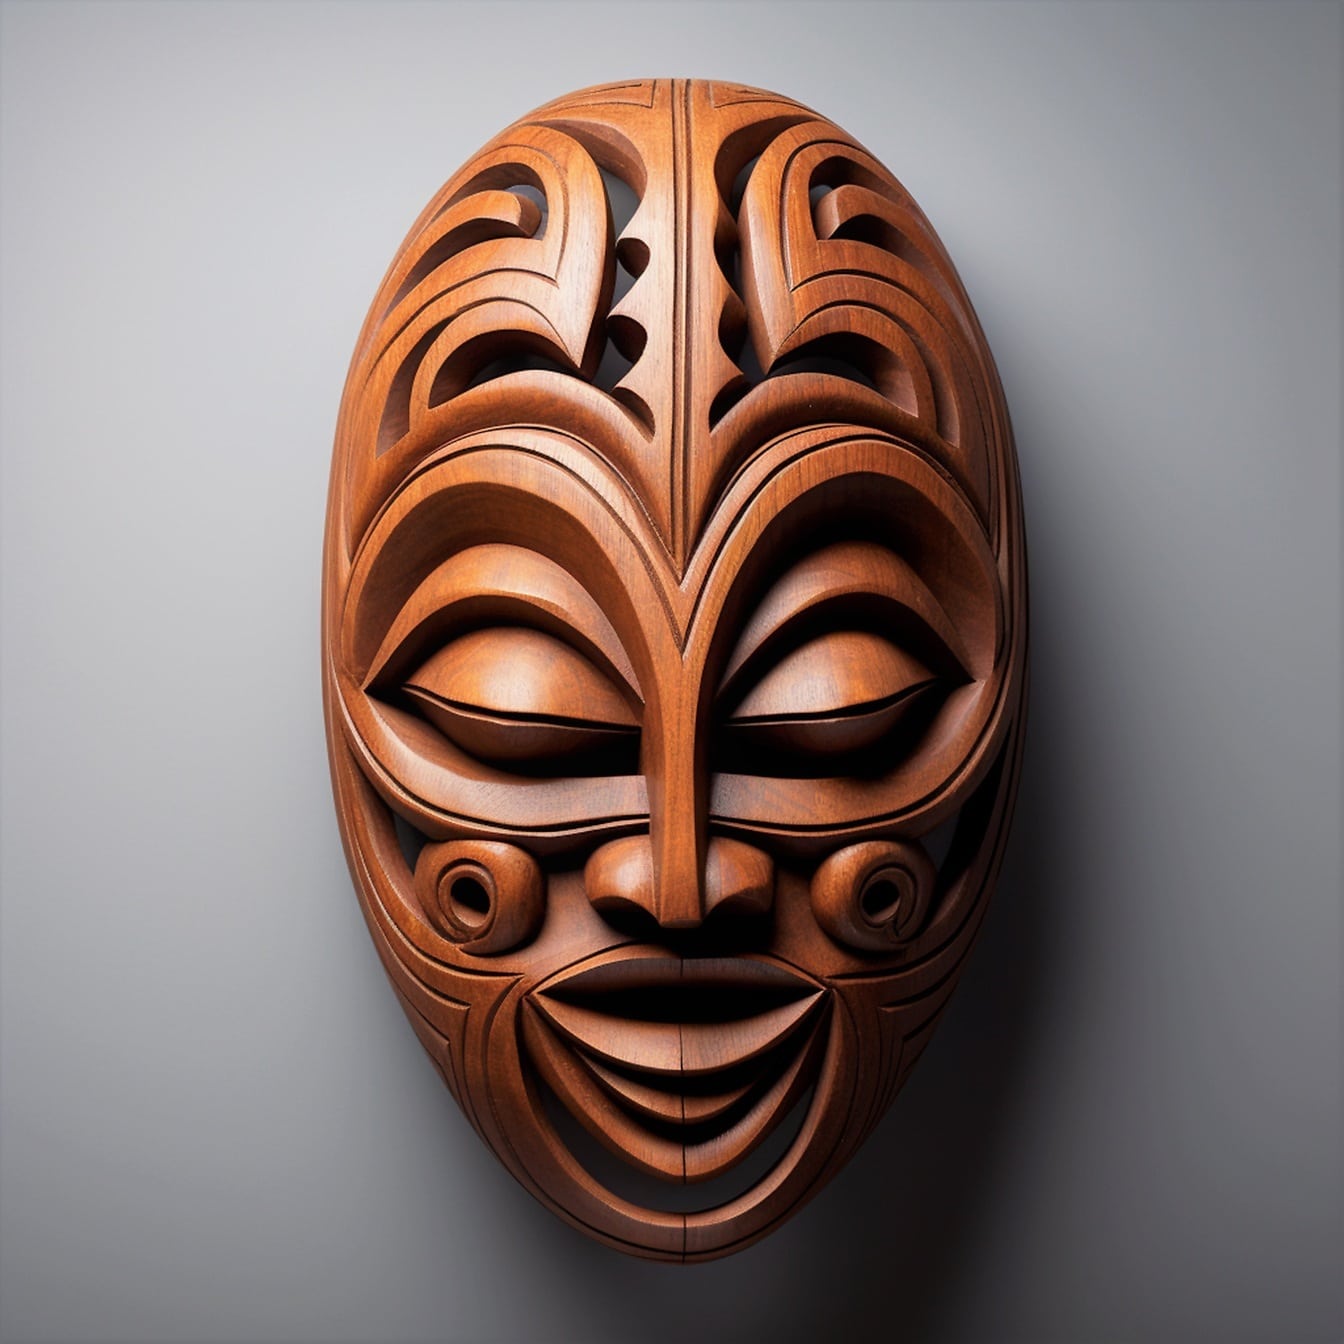 Masque facial en bois drôle fait à la main en gros plan